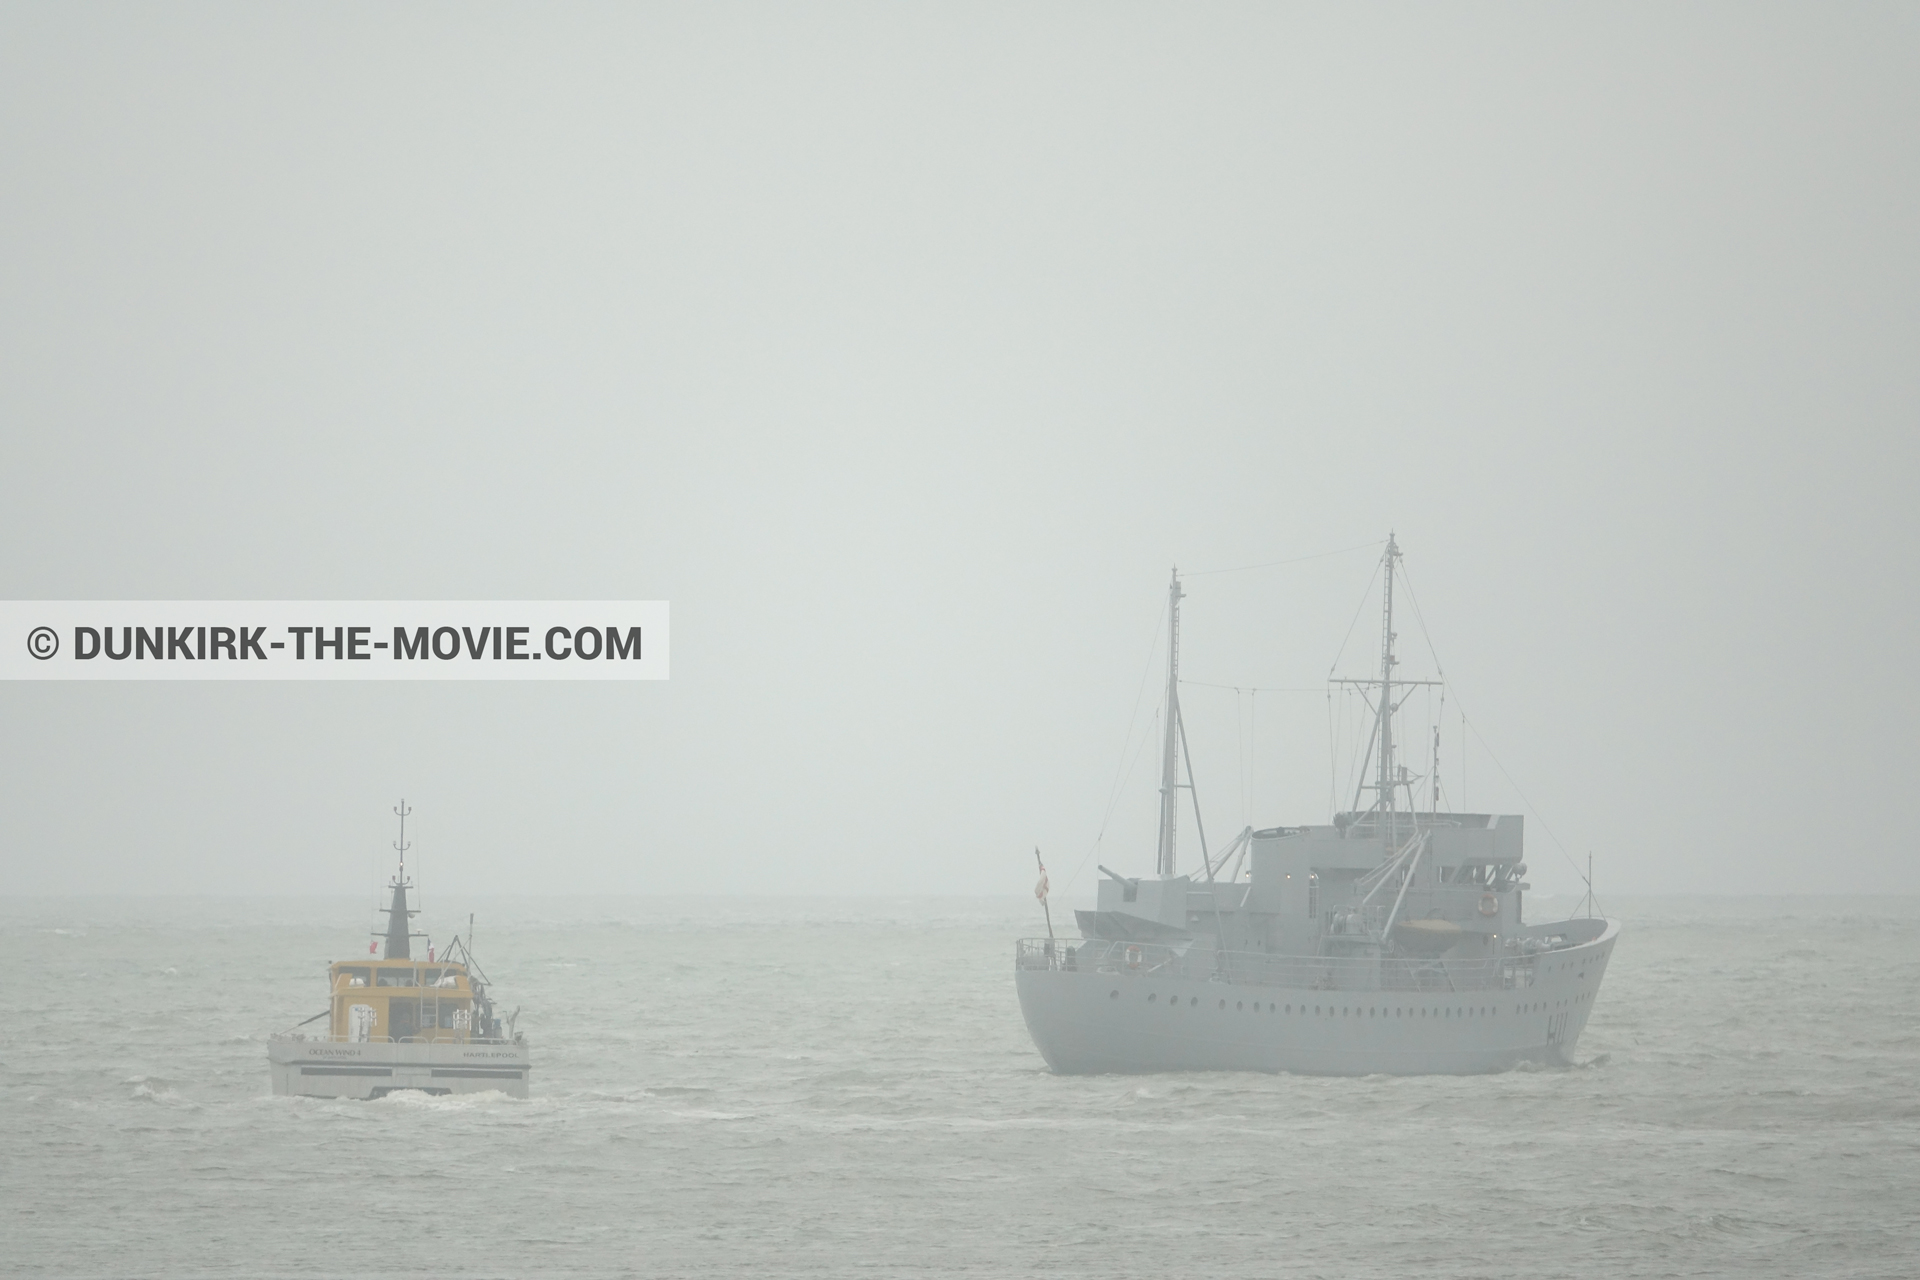 Photo avec bateau, ciel gris, H11 - MLV Castor, mer calme, Ocean Wind 4,  des dessous du Film Dunkerque de Nolan